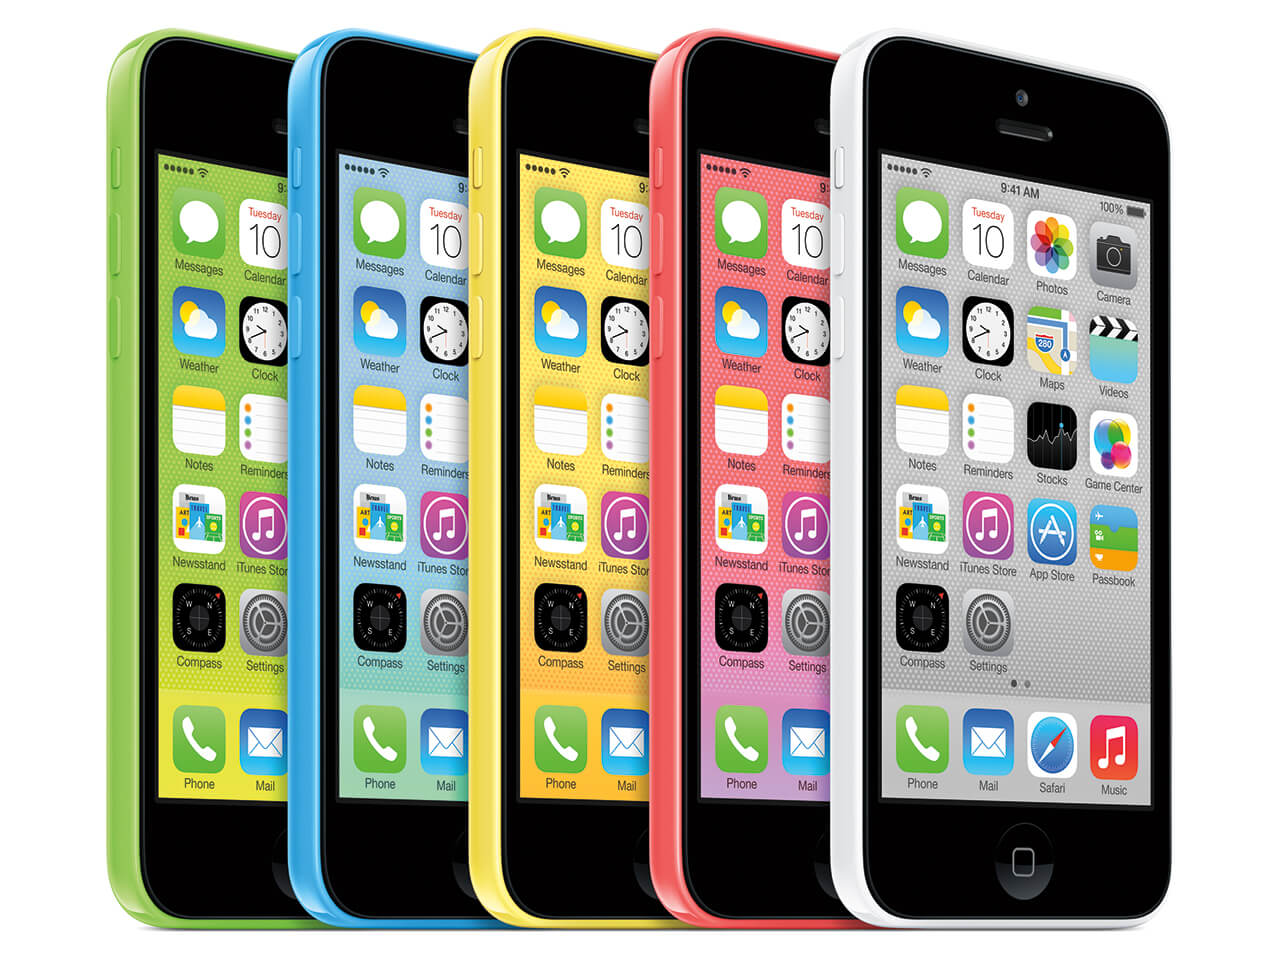 iPhone 5C kopen? Lees alles dit kleurrijke toestel